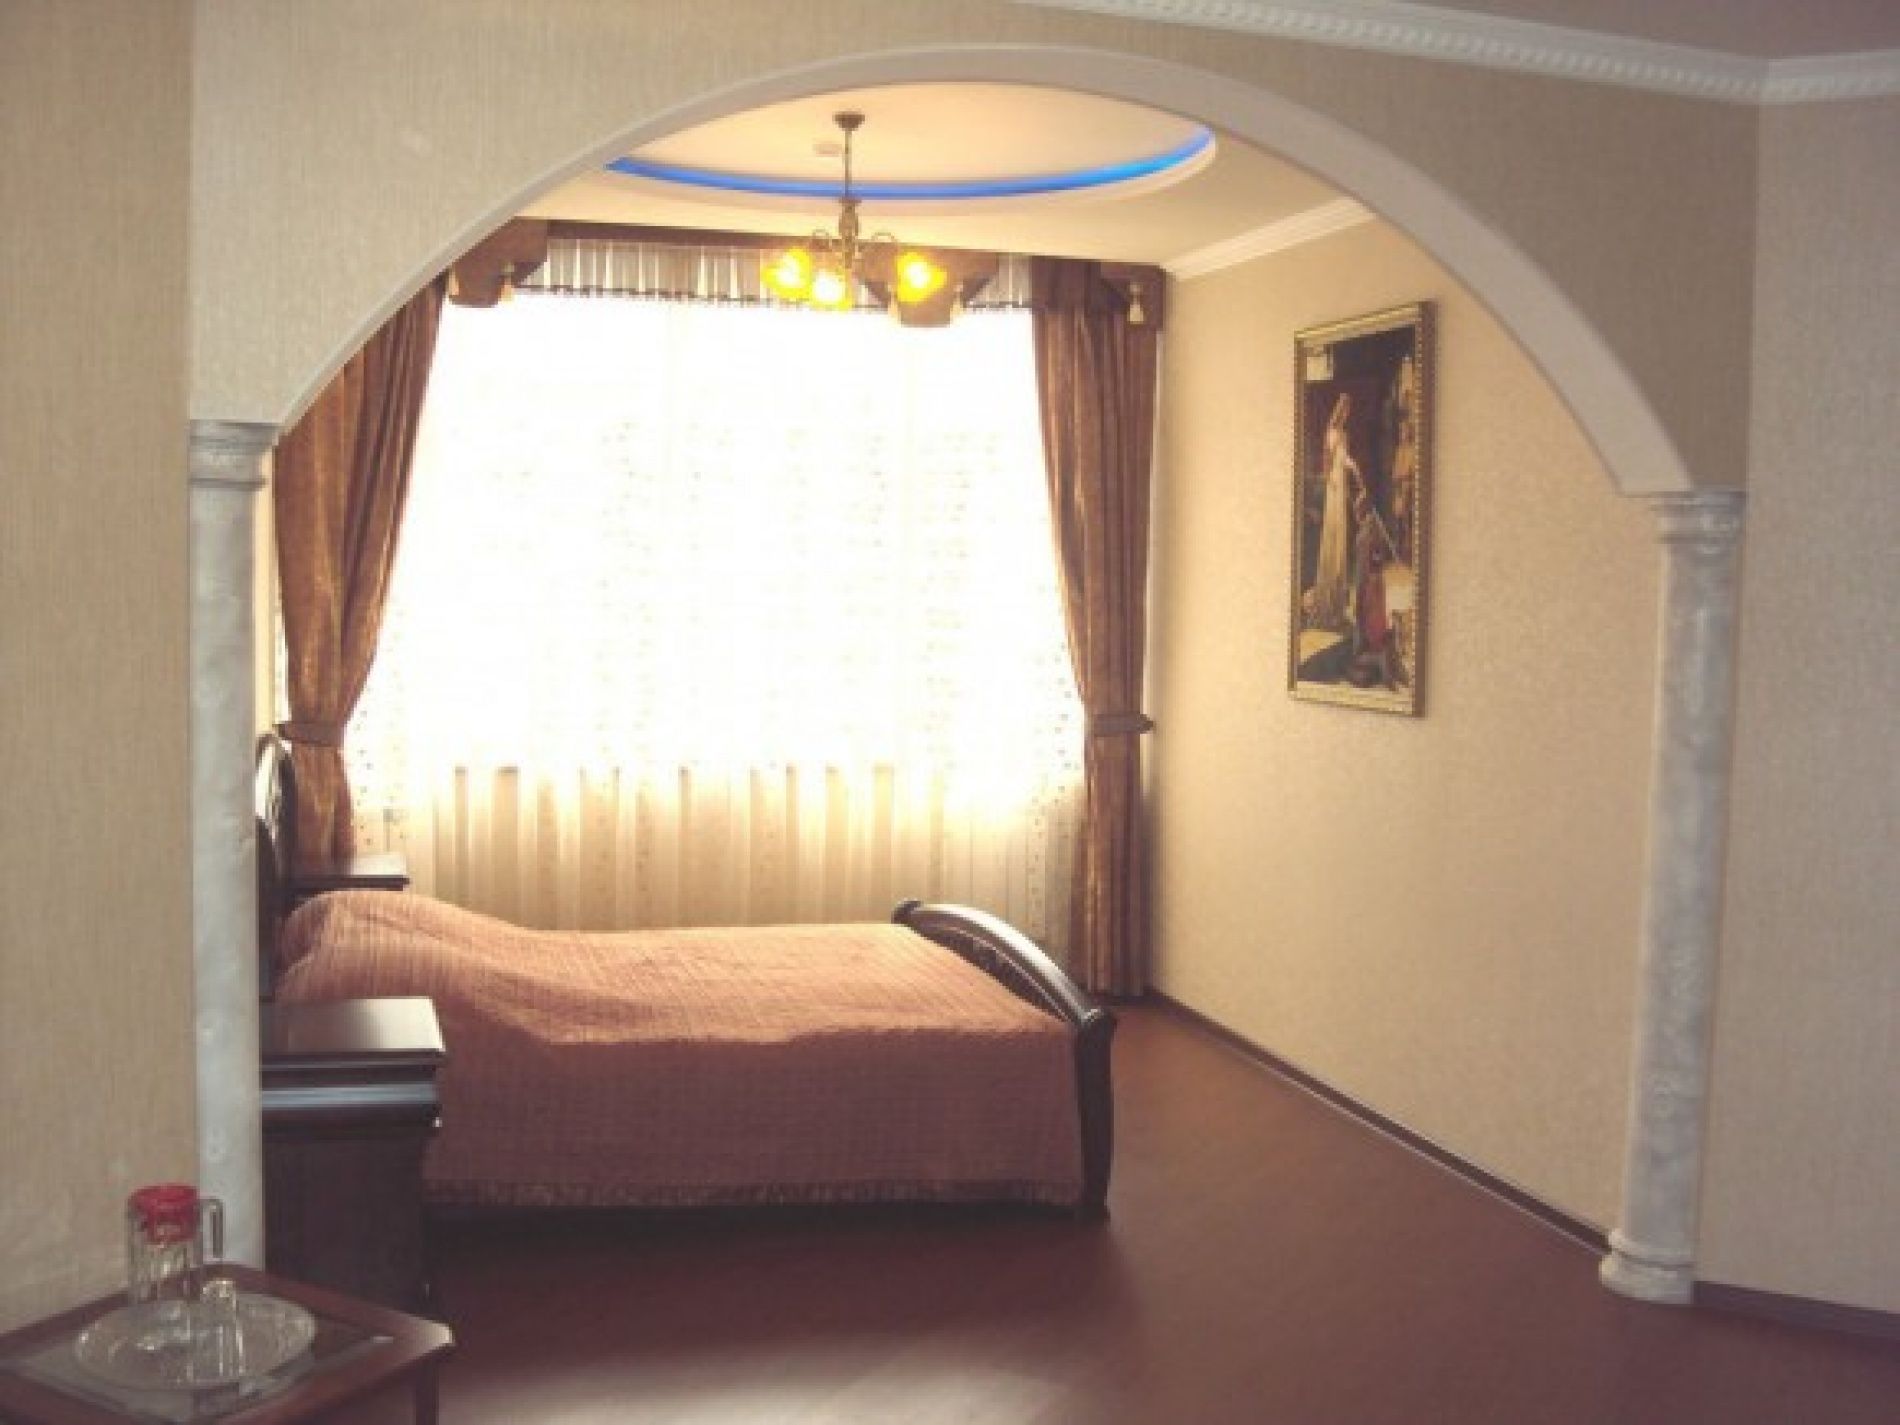  Отель "Меридиан" Карачаево-Черкесская Республика, фото 7